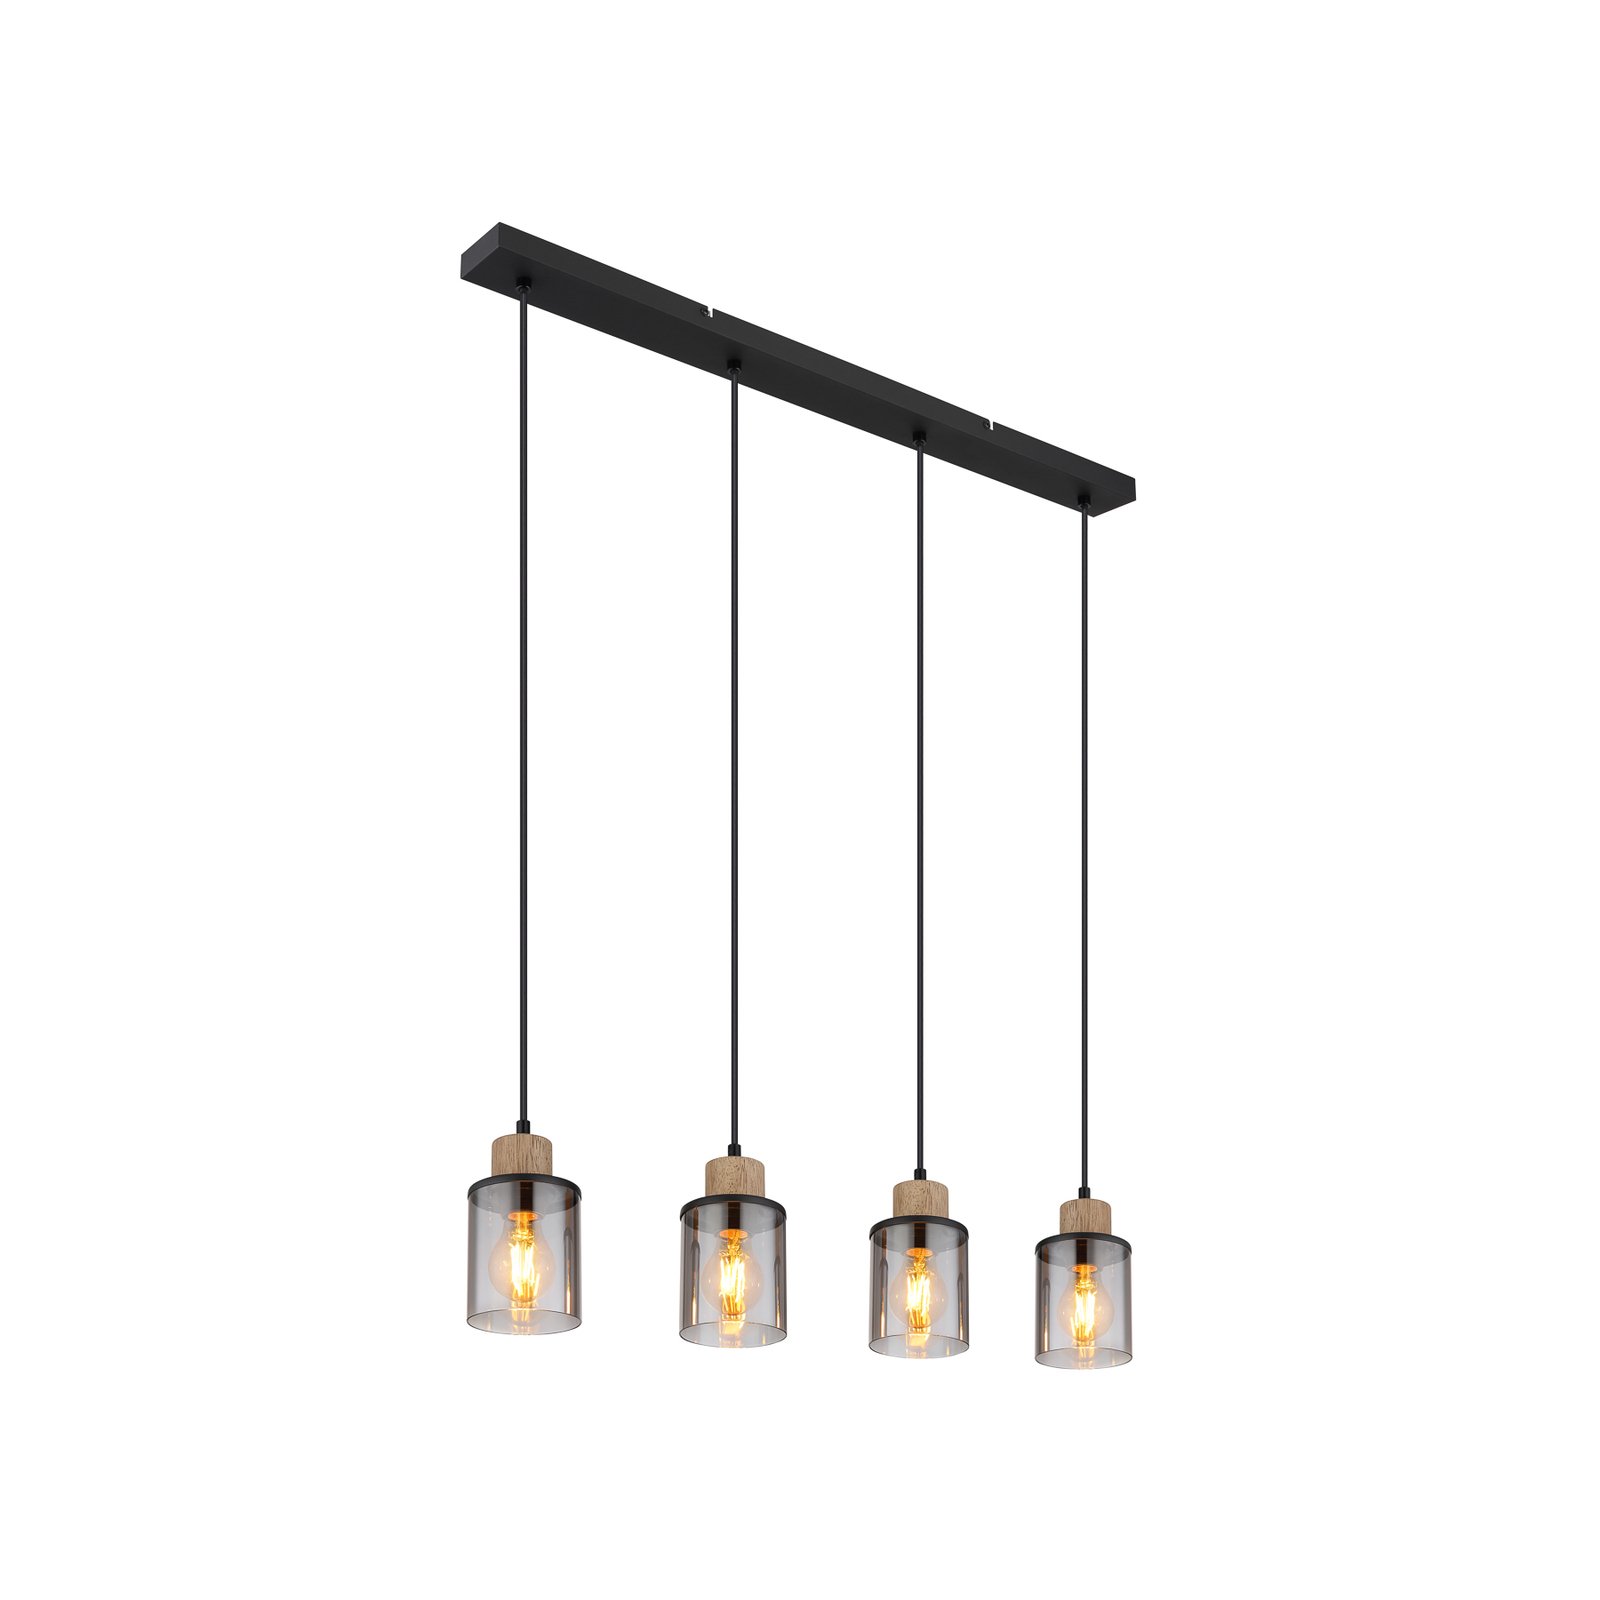 Hanglamp Reid, 4-lamps, zwart/rook